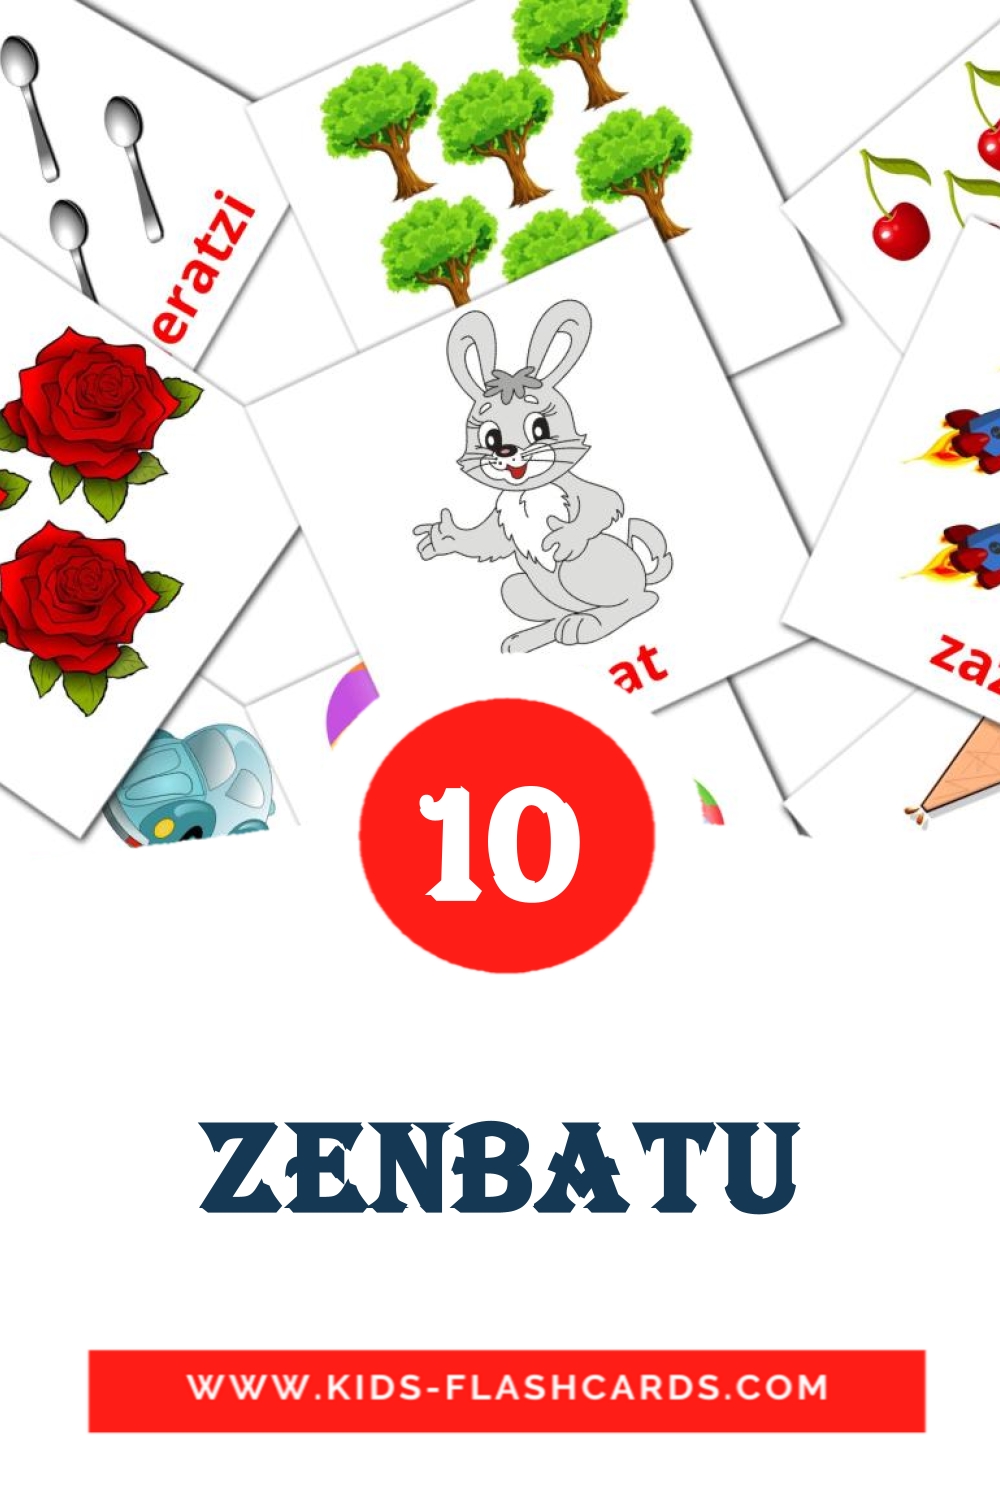 10 Cartões com Imagens de Zenbatu para Jardim de Infância em basco